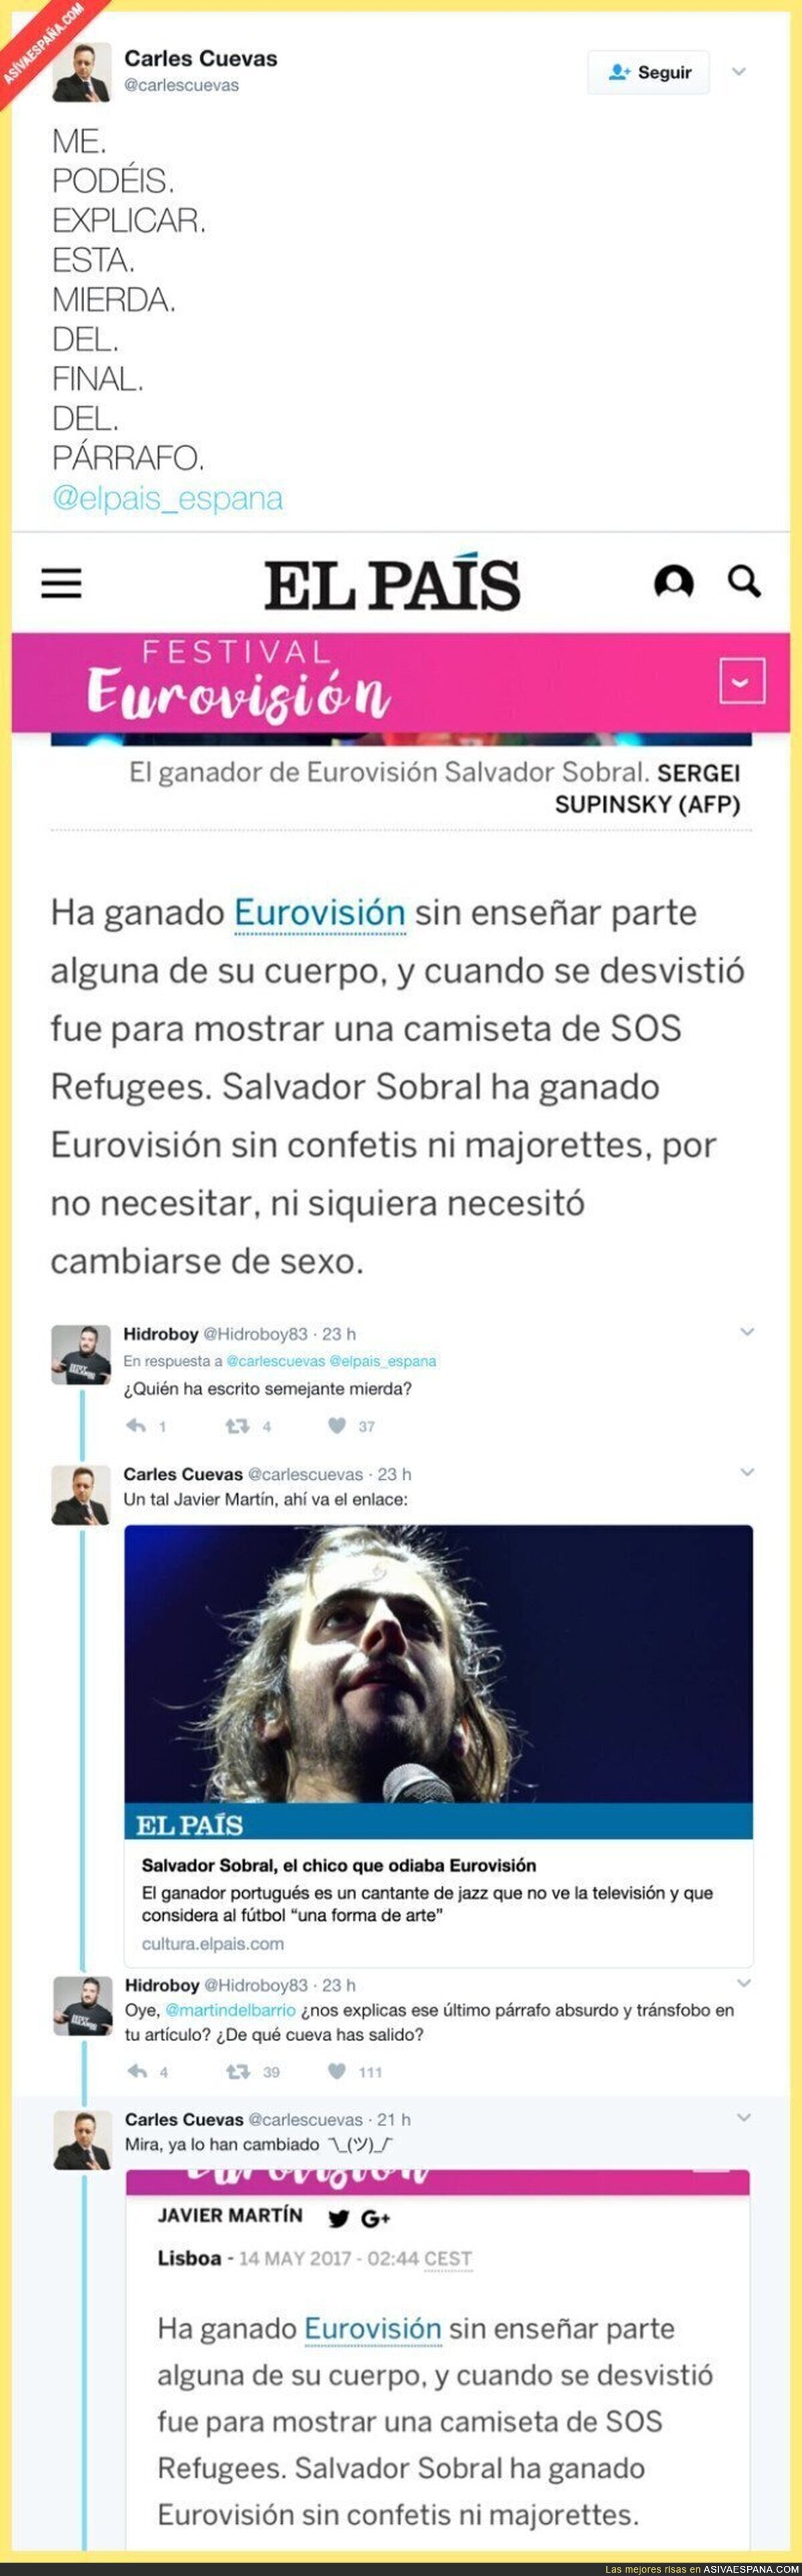 El lamentable párrafo transfóbico en este artículo de "El País" sobre el ganador de Eurovisión